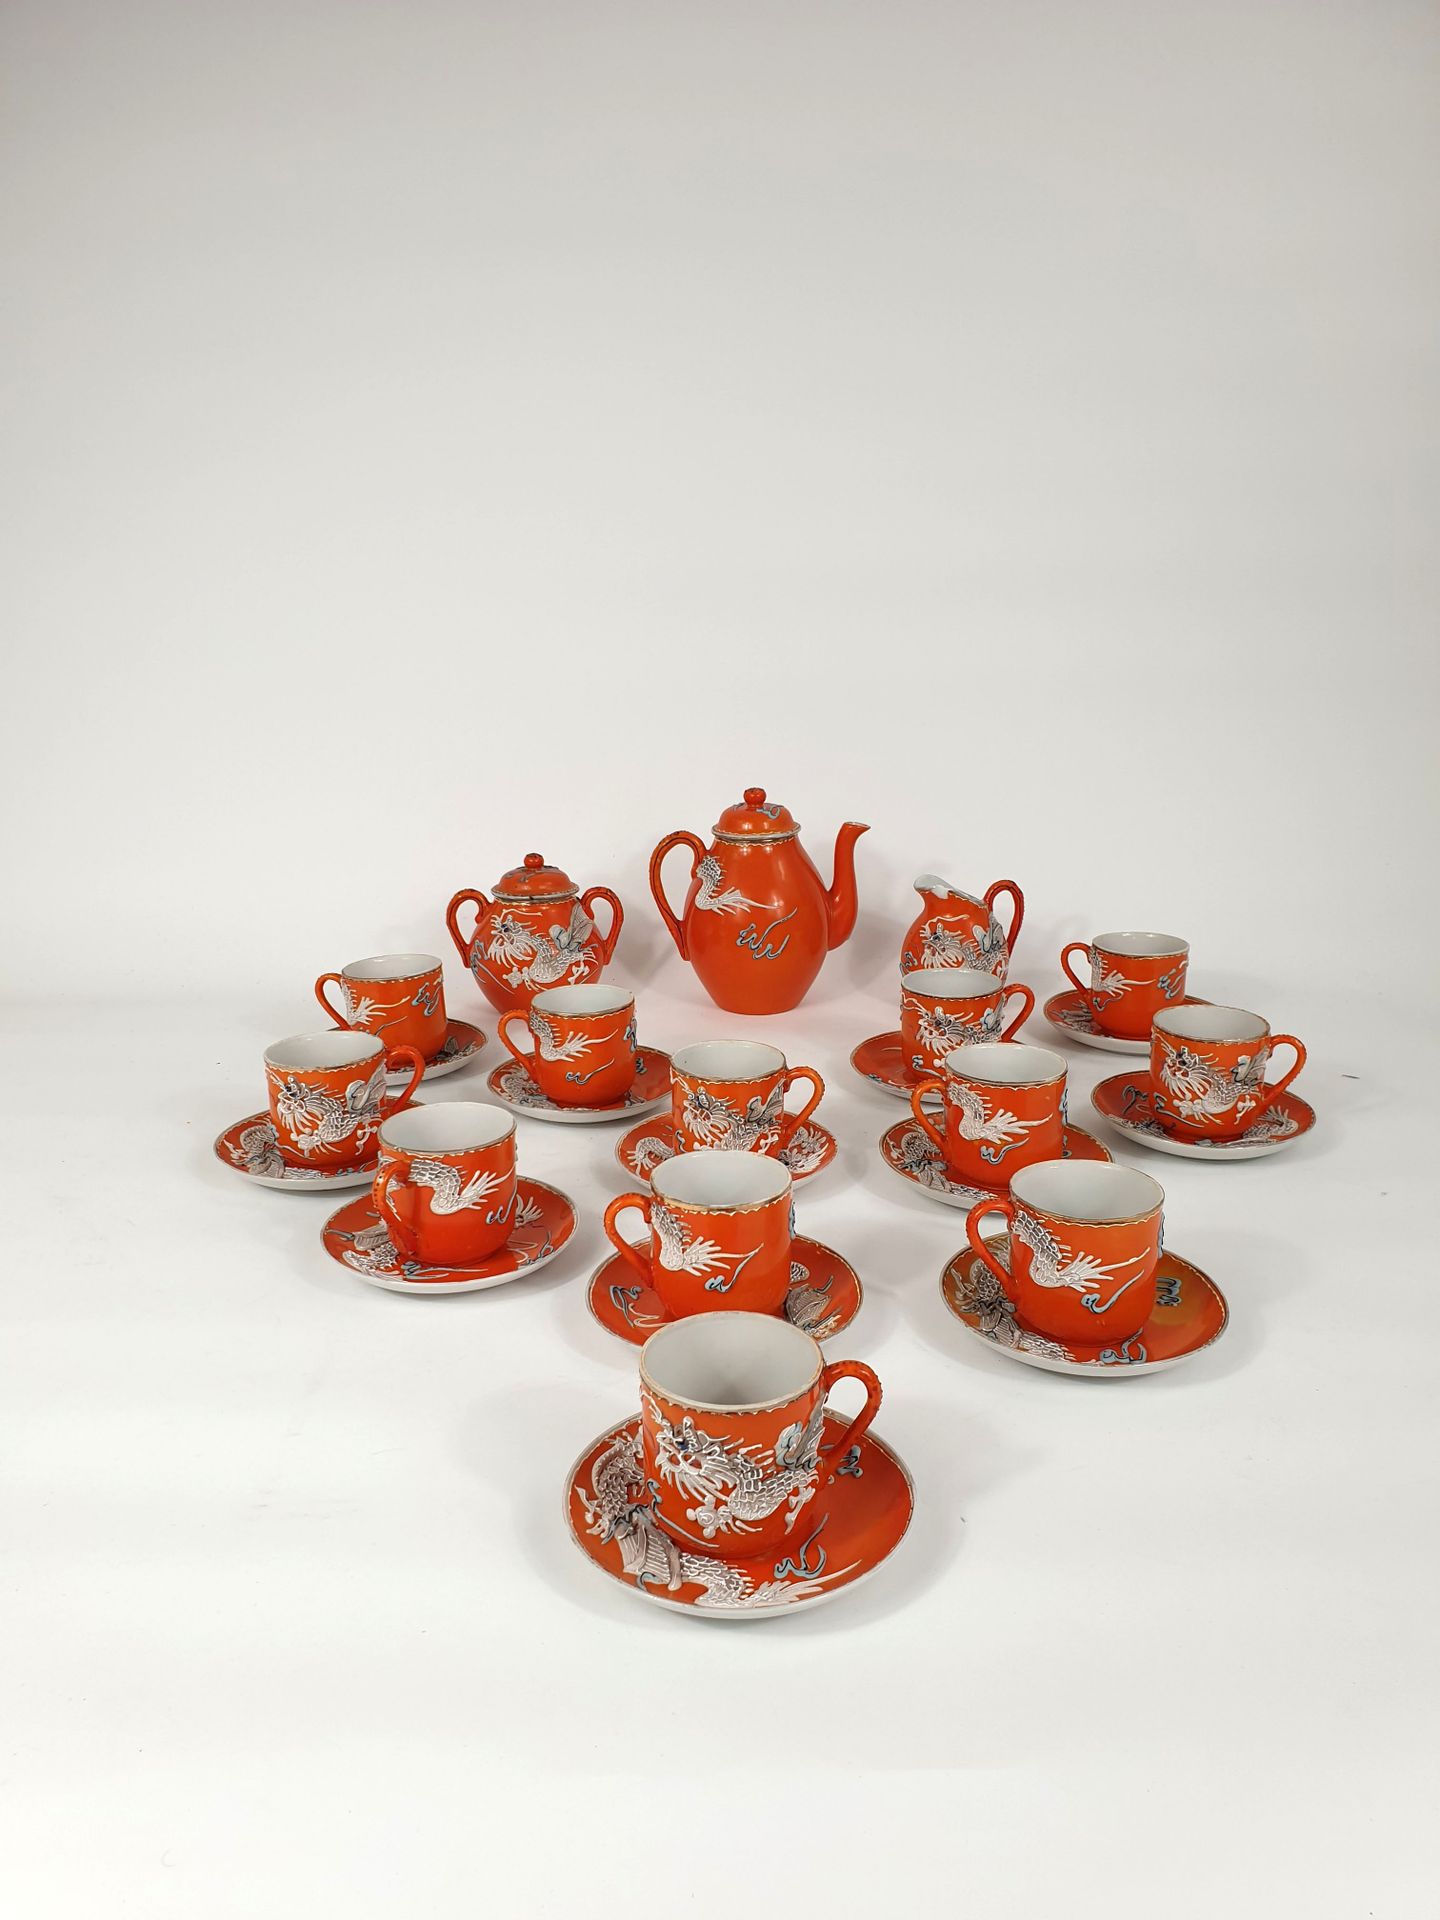 Null 橙色背景的龙纹茶具，包括十二个杯和碟，一个壶，一个牛奶壶和一个有盖糖碗
日本，萨摩，20世纪
(牛奶壶的壶嘴已经损坏，糖碗的盖子已经粘回去了，装饰已经&hellip;